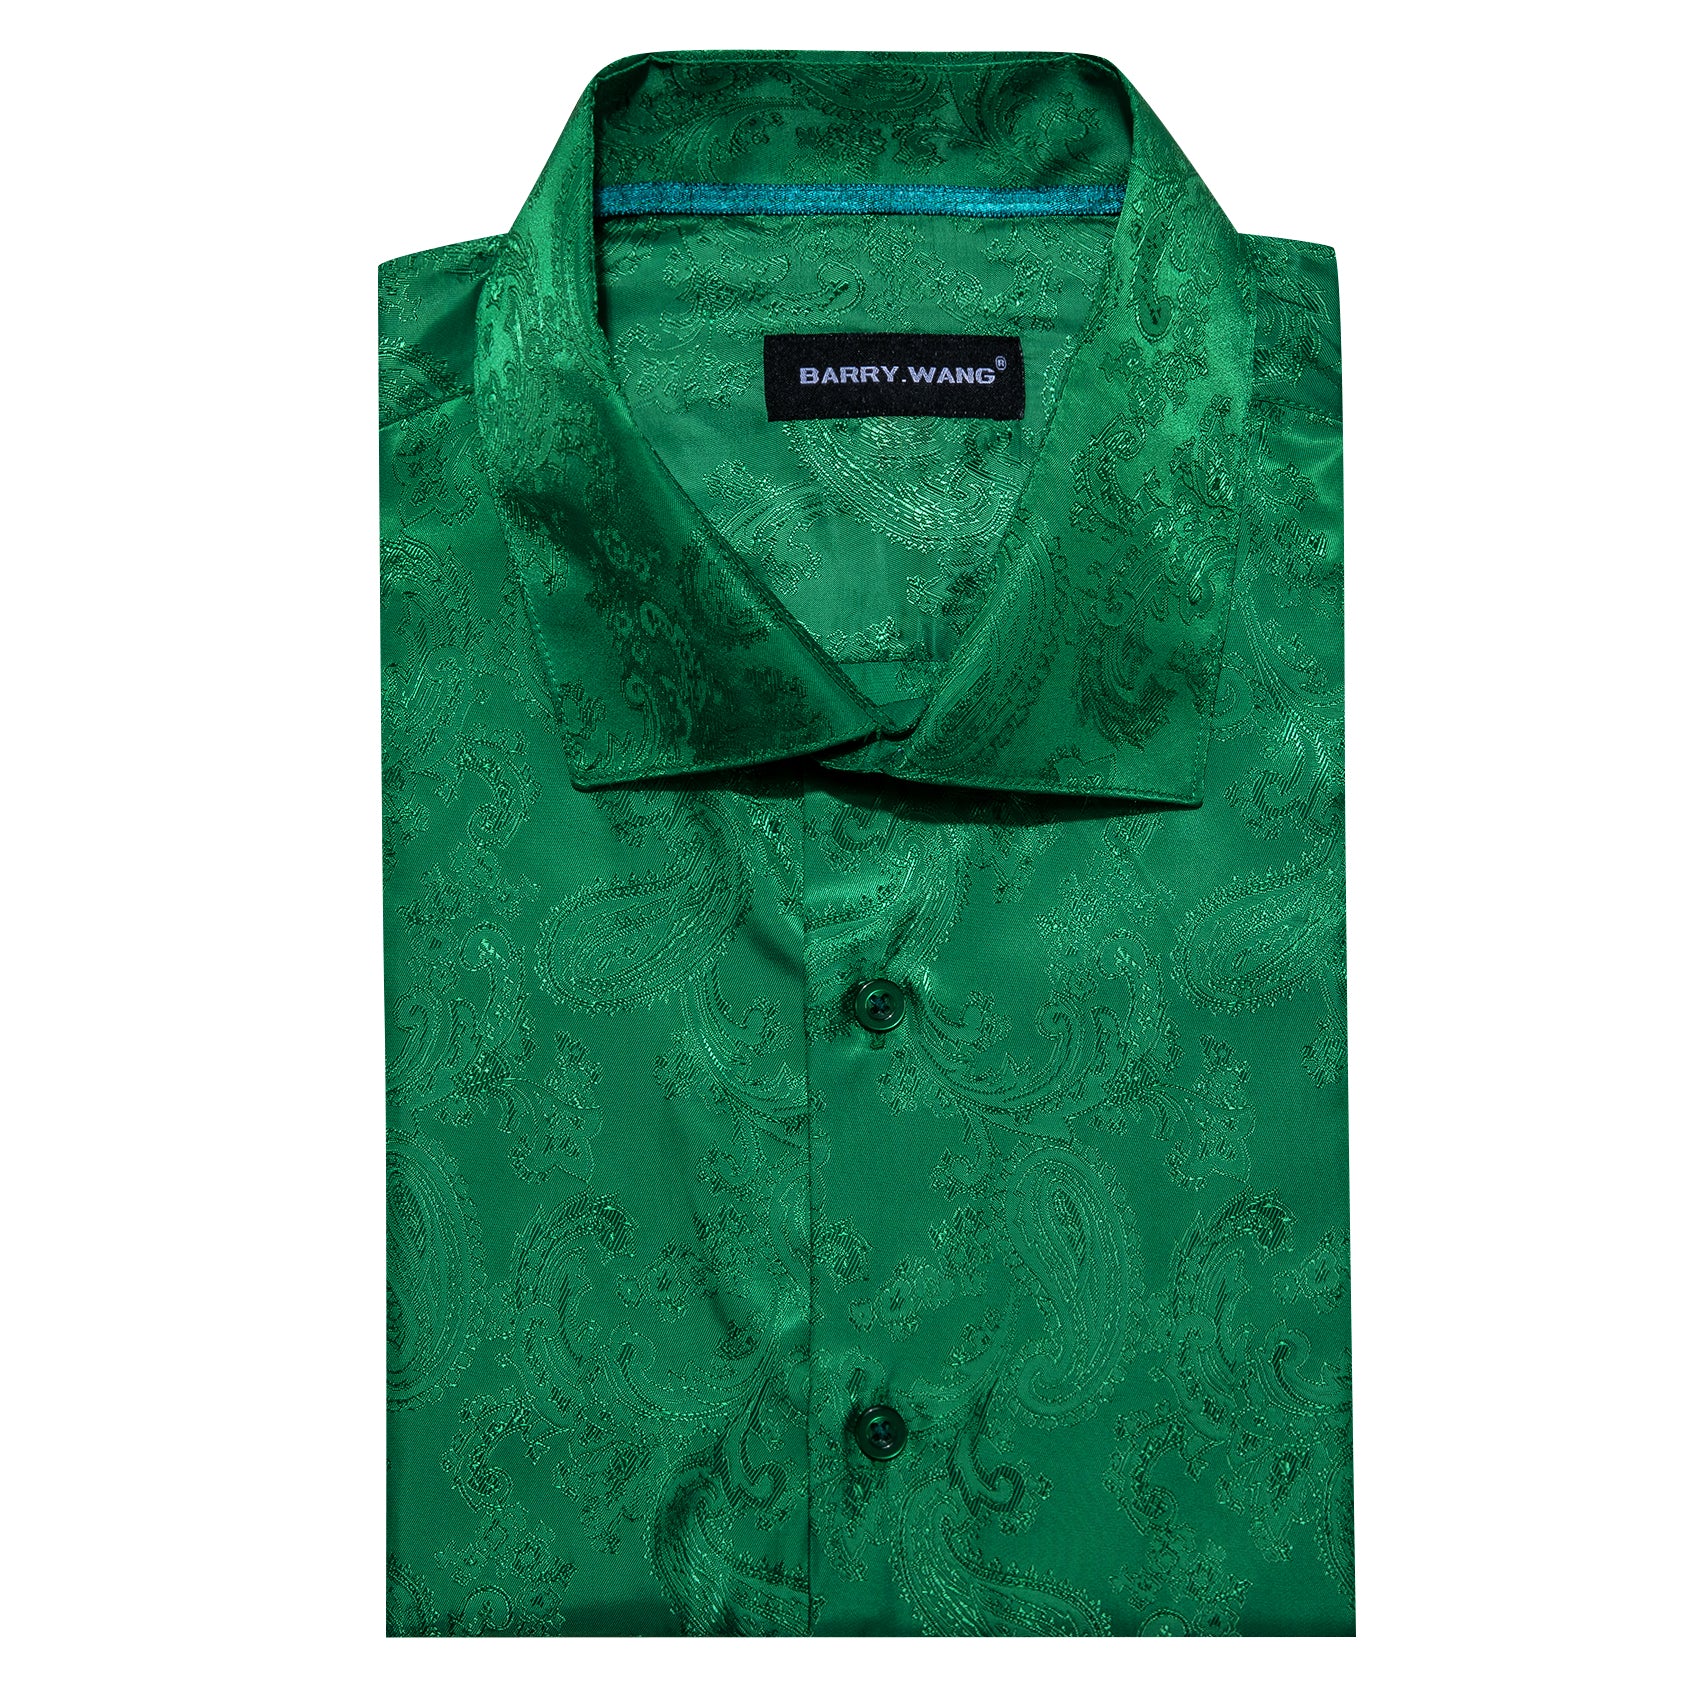 Barry.wang Grass Green Paisley Silk Men's Shirt